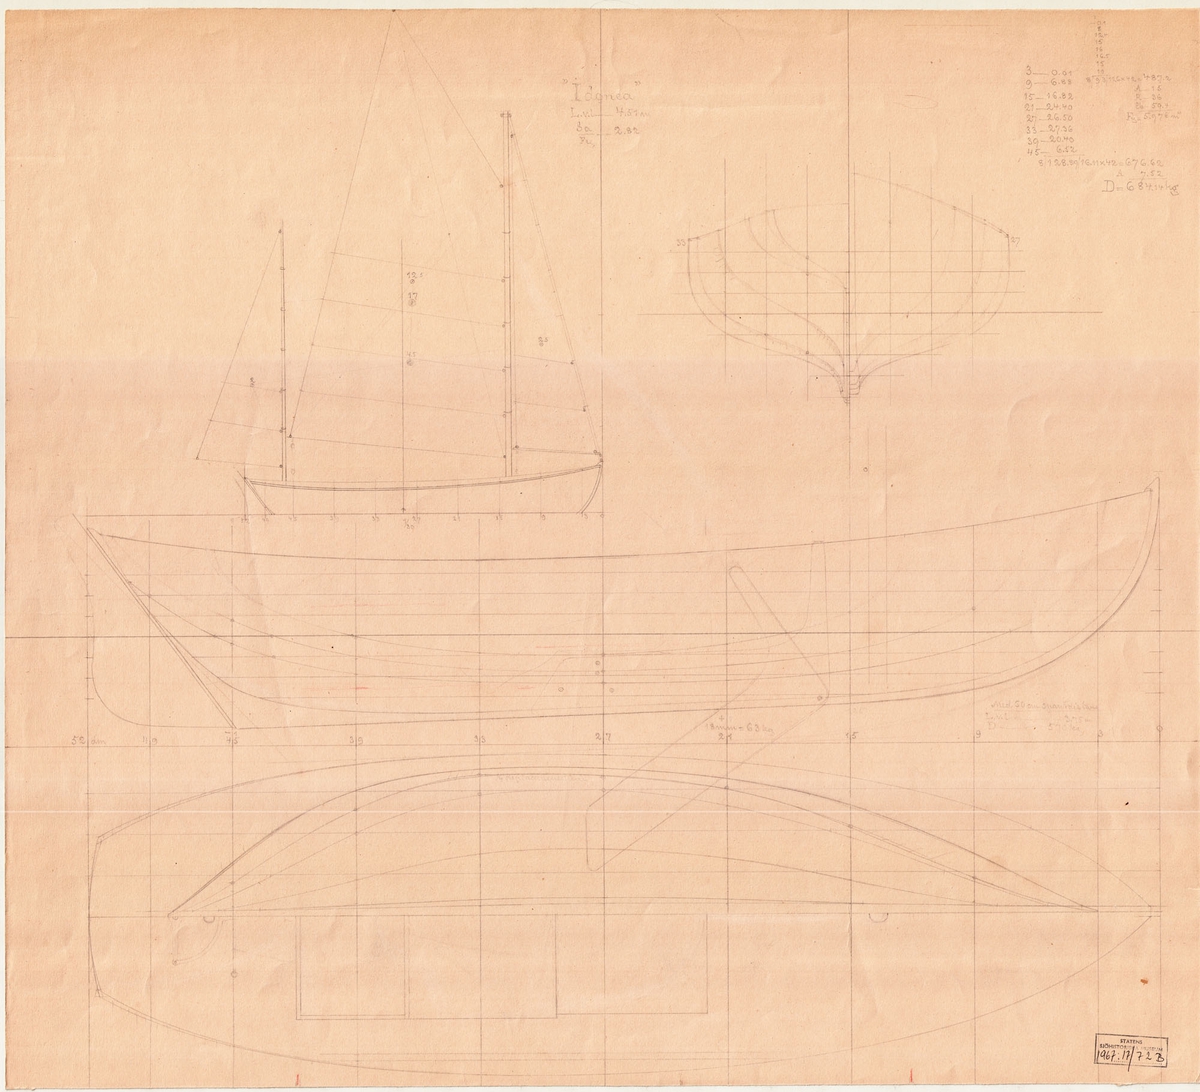 Tvåmastad segelkanot med gaffelrigg och centerbord.
Spantruta, segel-, profil- och linjeritning